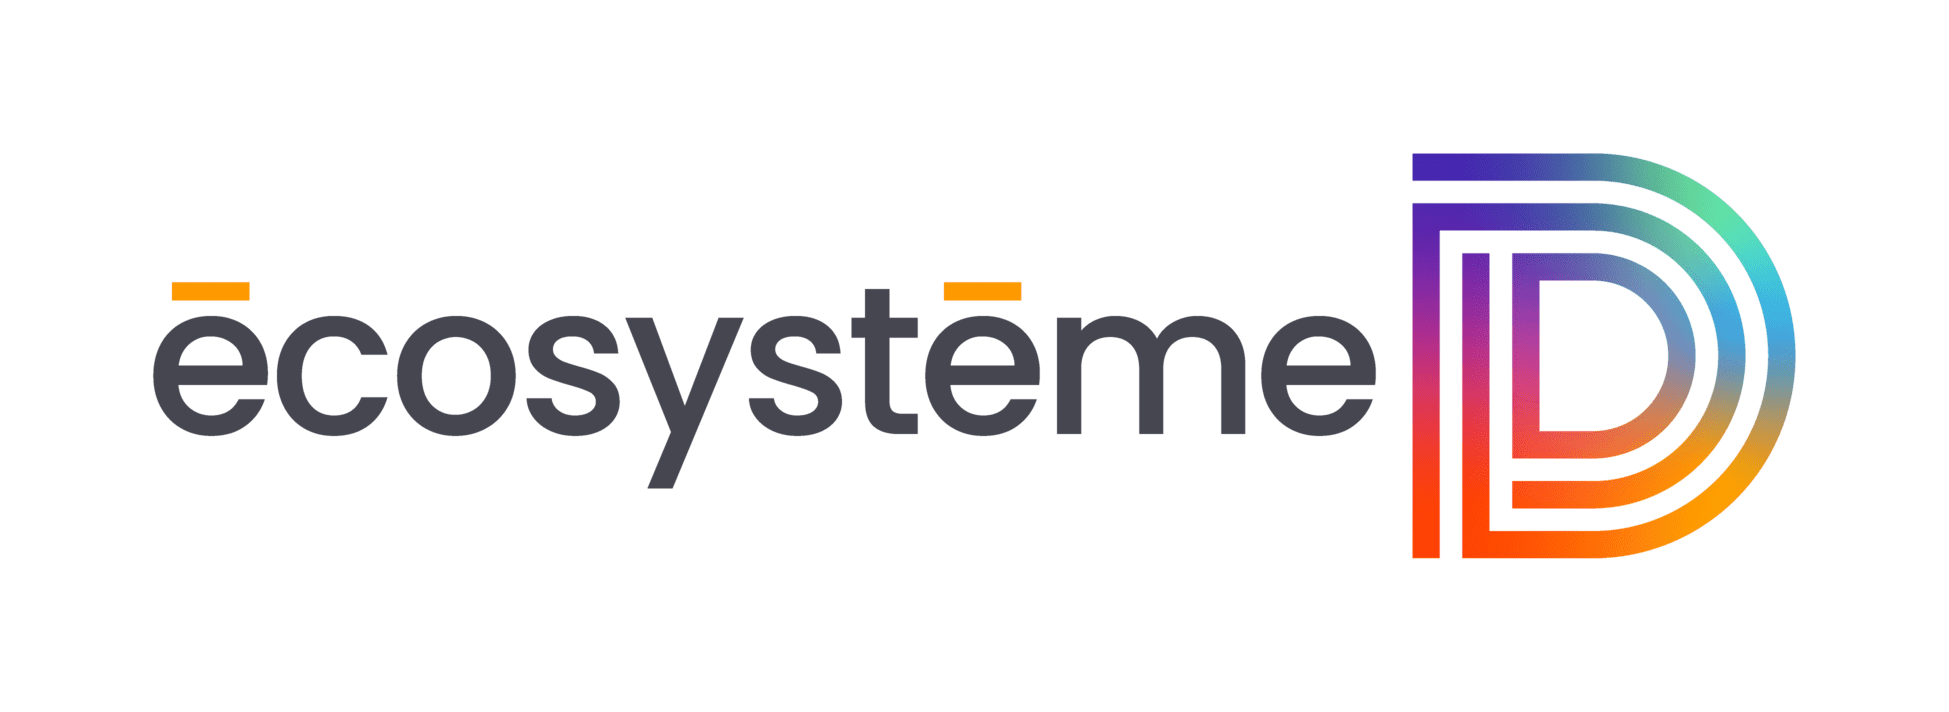 Logo Ecosysteme D